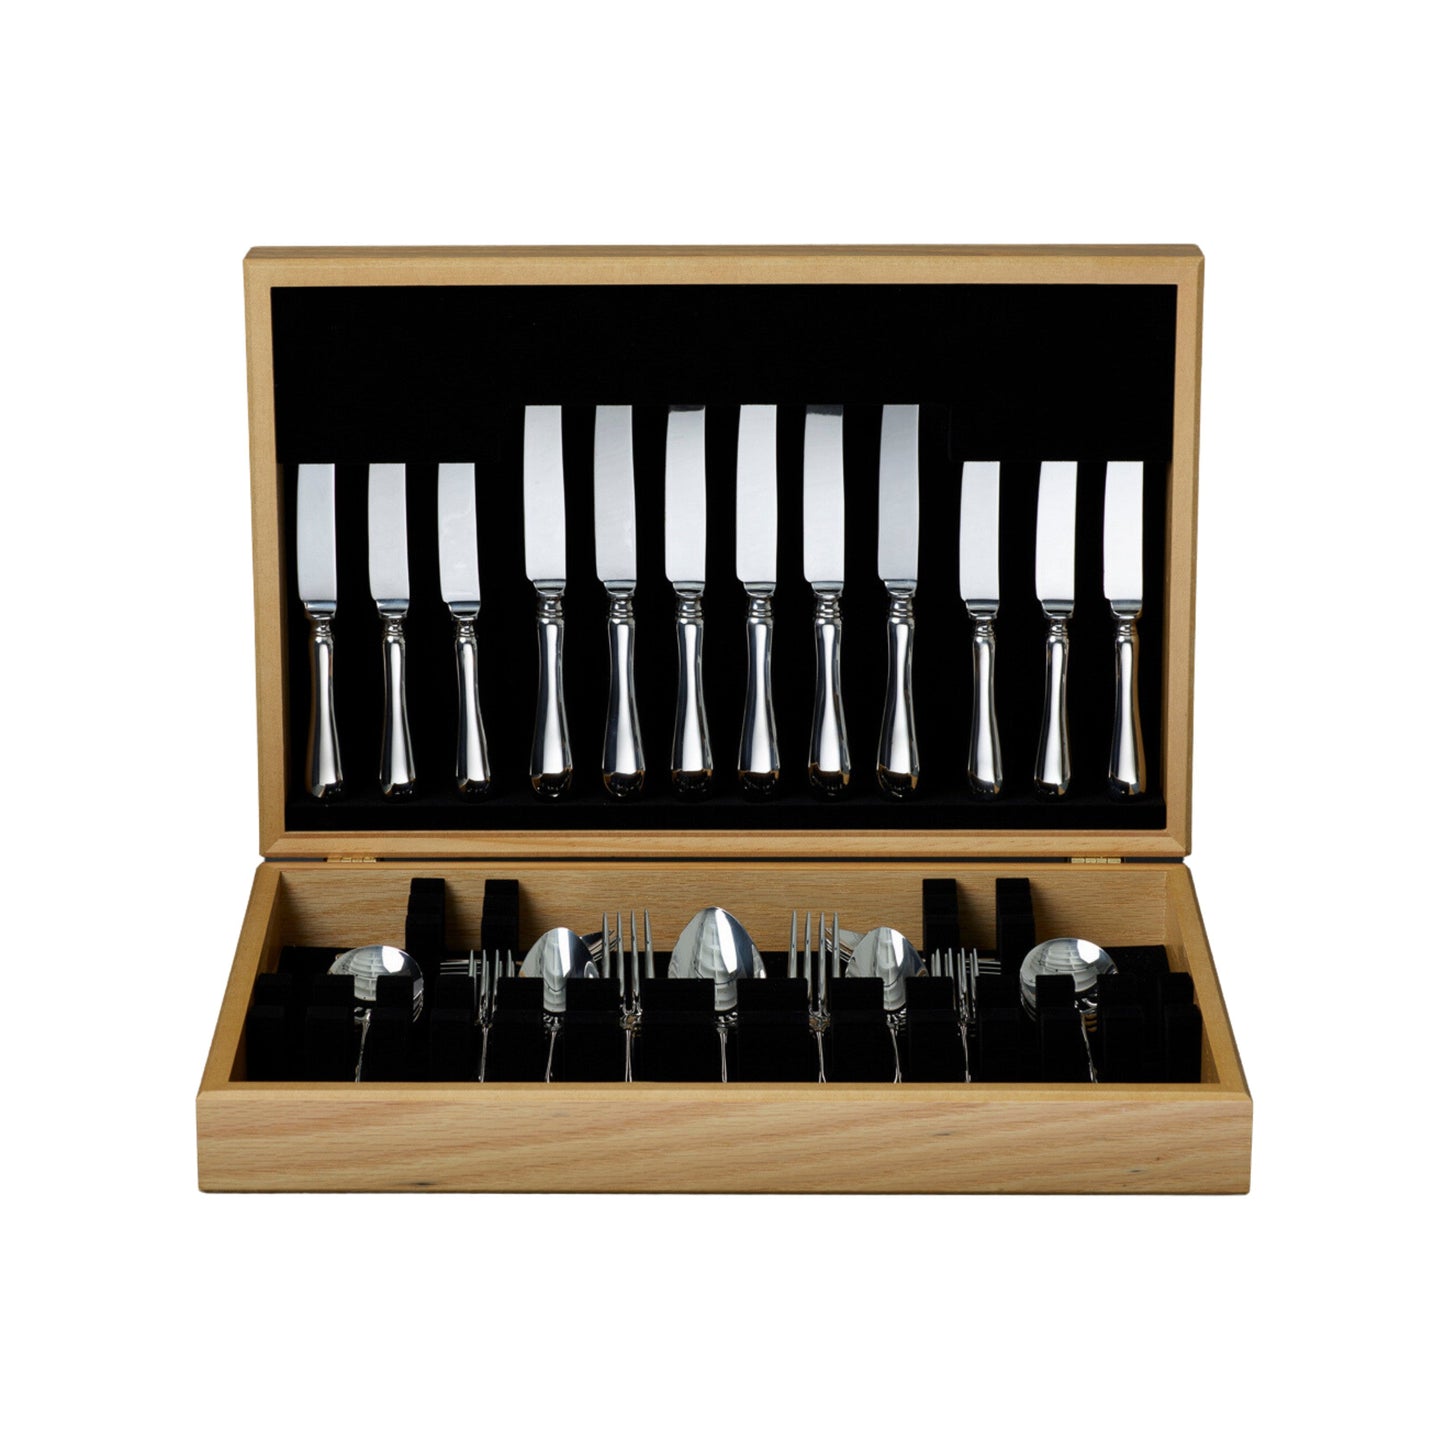 Dubarry flatware cutlery set